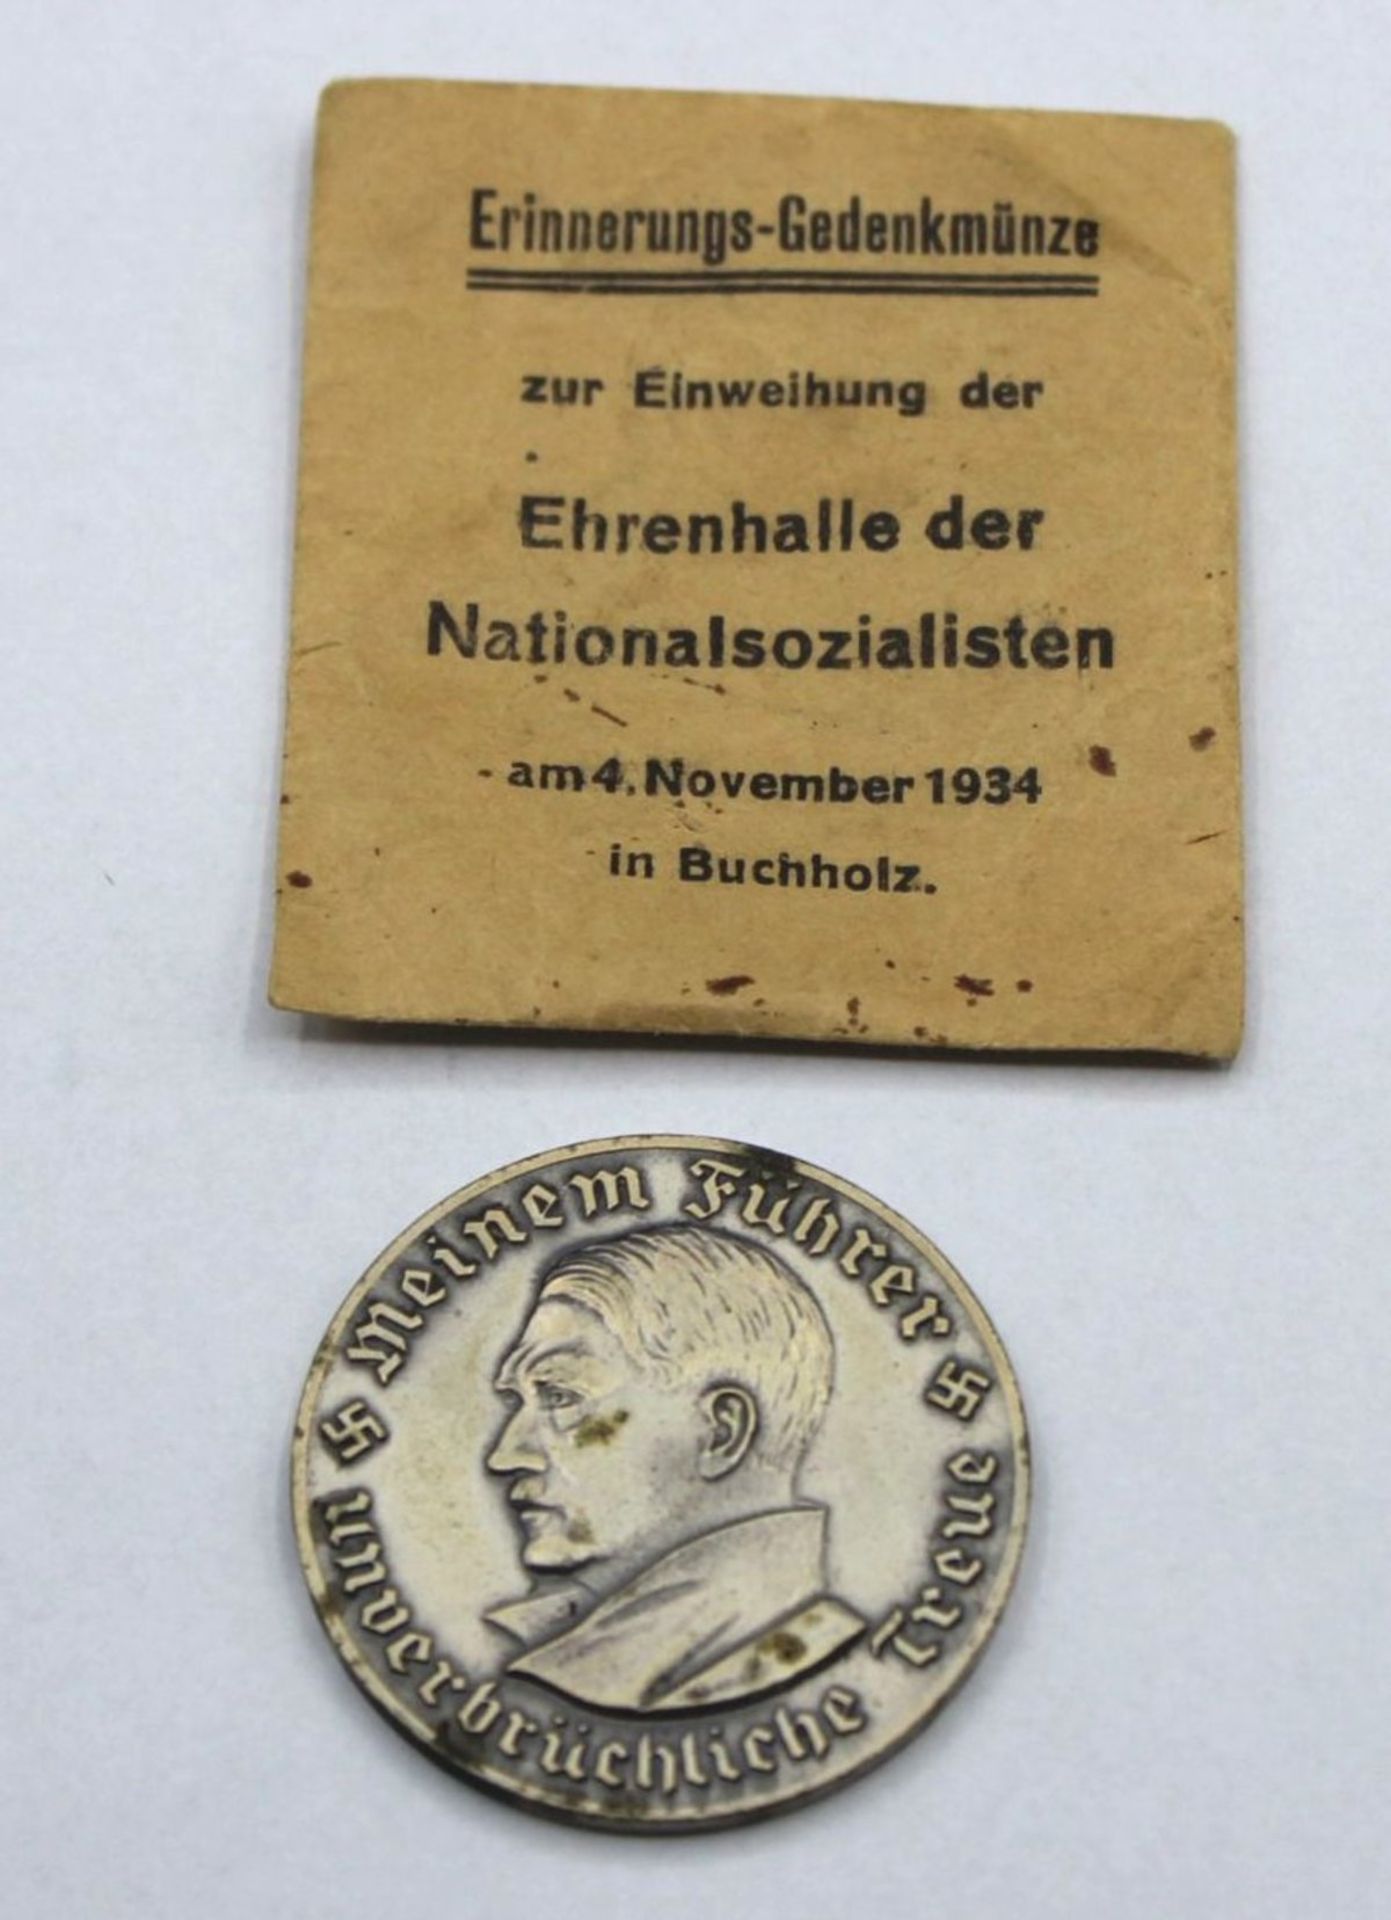 Gedenkmünze Buchholz 1934 Kanzler Brustbild mit Umschrift "Meinem Führer unverbrüchliche Treue",